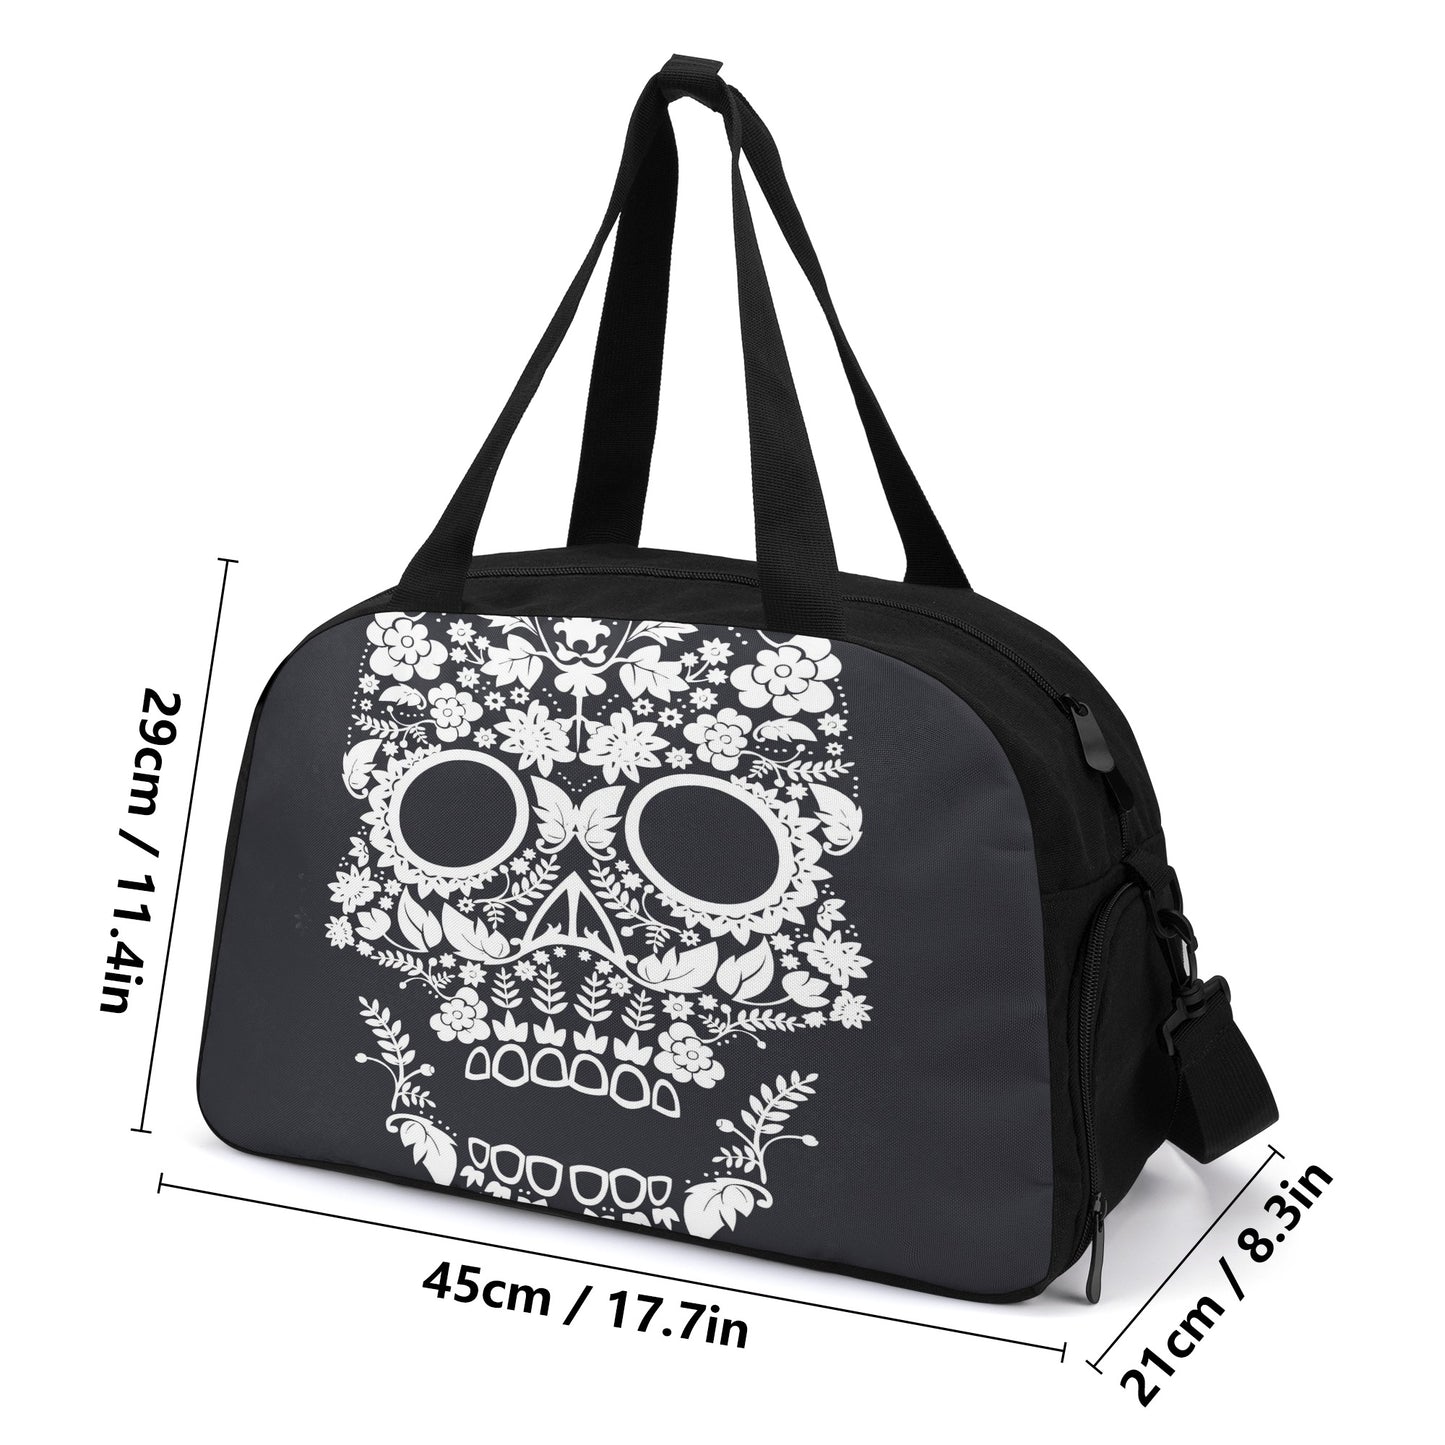 Floral skull Travel Luggage Bag